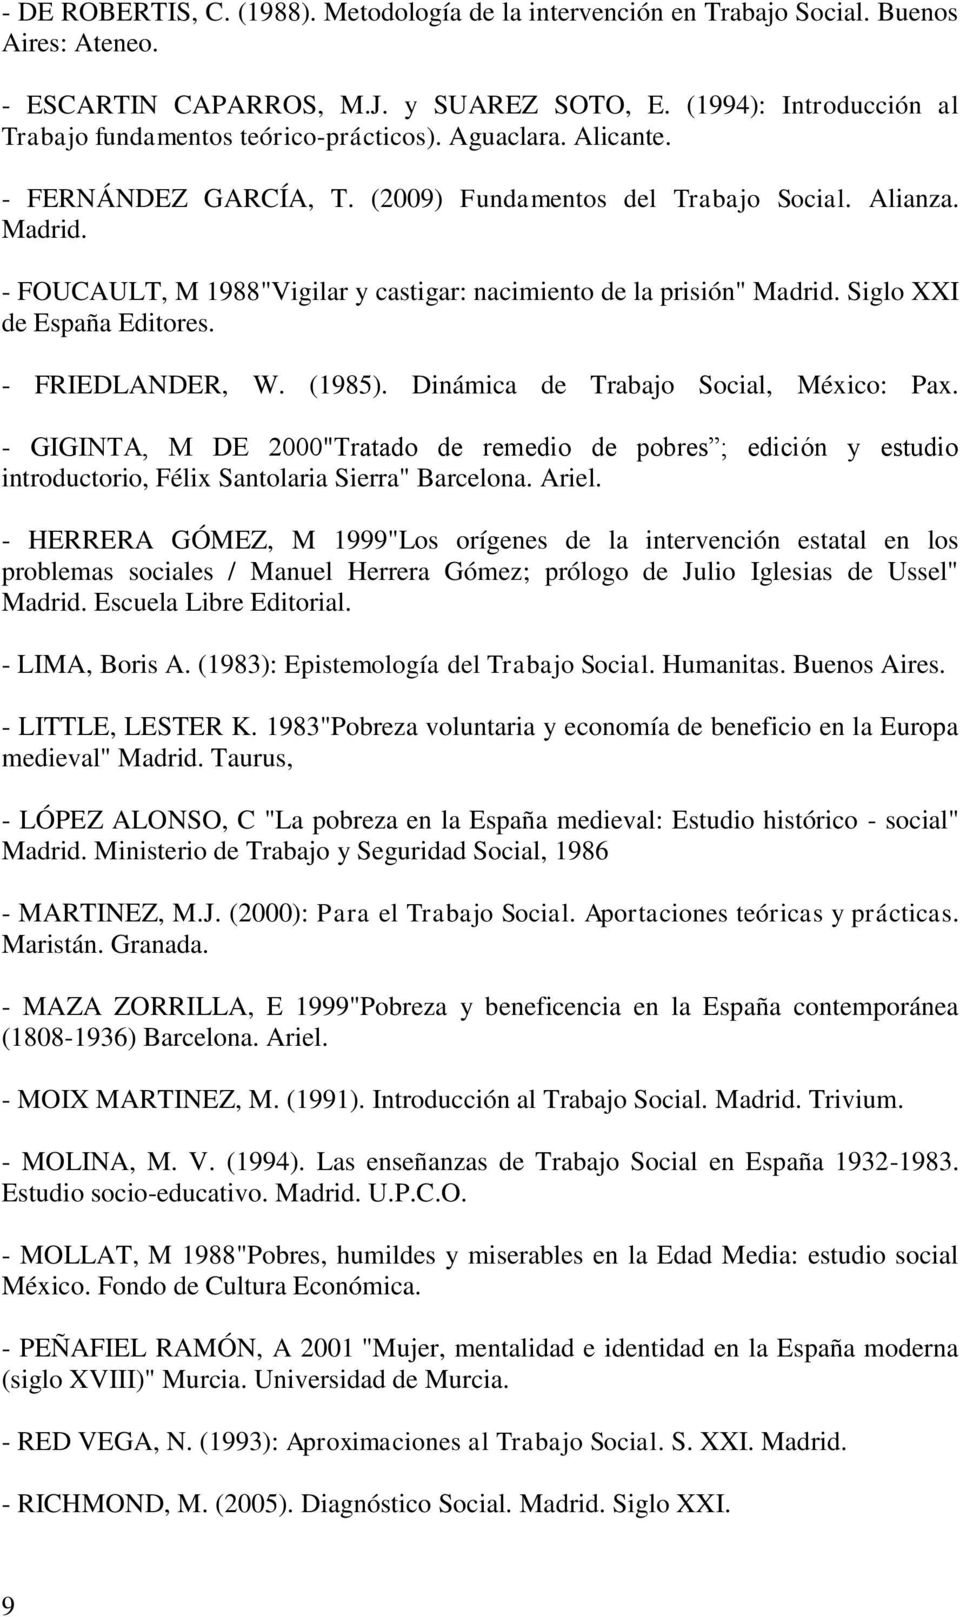 - FOUCAULT, M 1988"Vigilar y castigar: nacimiento de la prisión" Madrid. Siglo XXI de España Editores. - FRIEDLANDER, W. (1985). Dinámica de Trabajo Social, México: Pax.